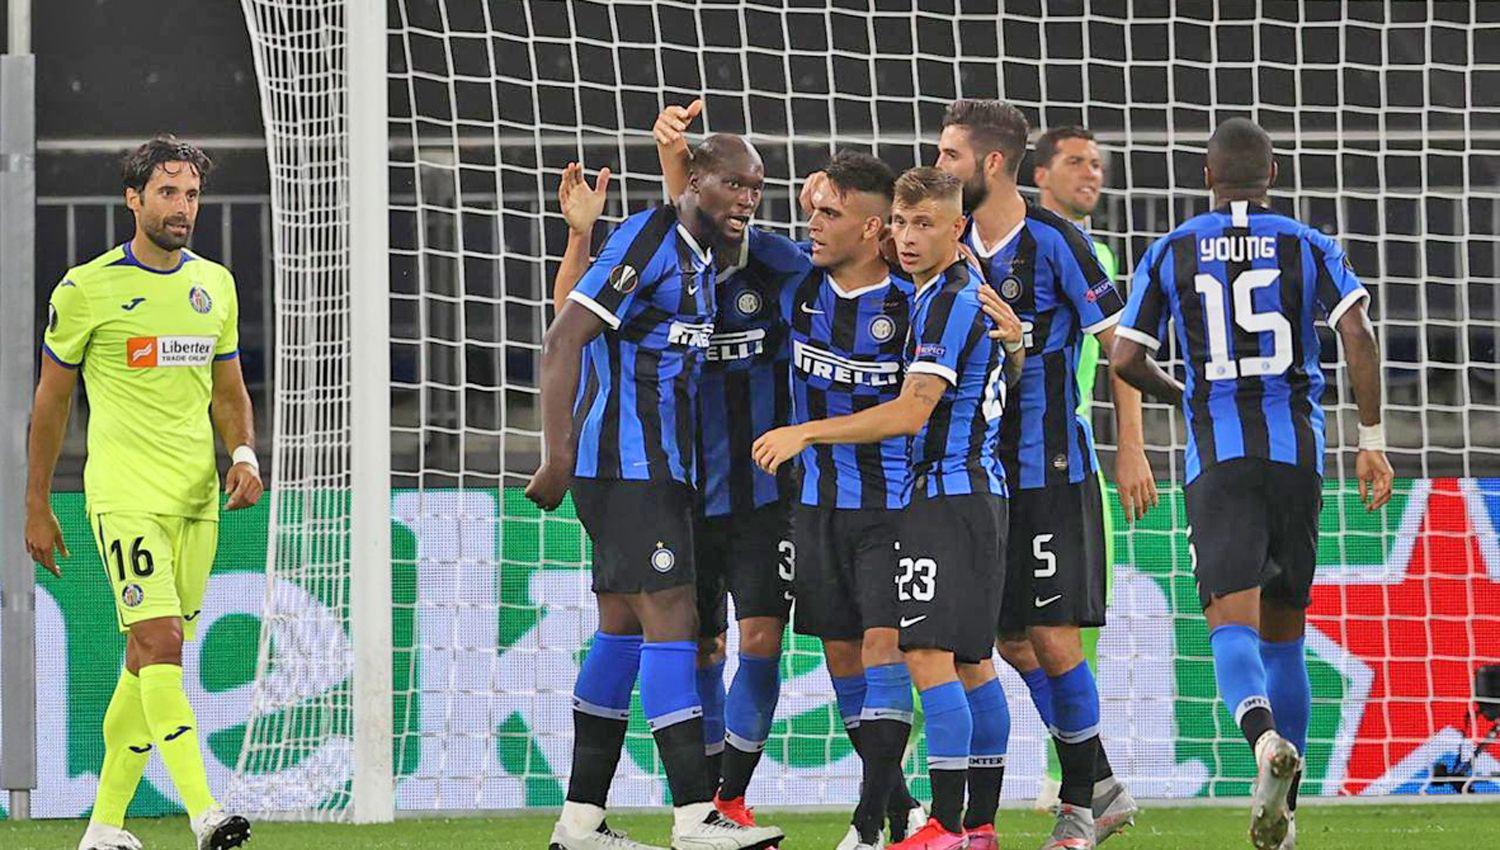 El Inter no la tuvo f�cil Getafe erró un penal sobre el final cuando el partido a�n estaba 1-0